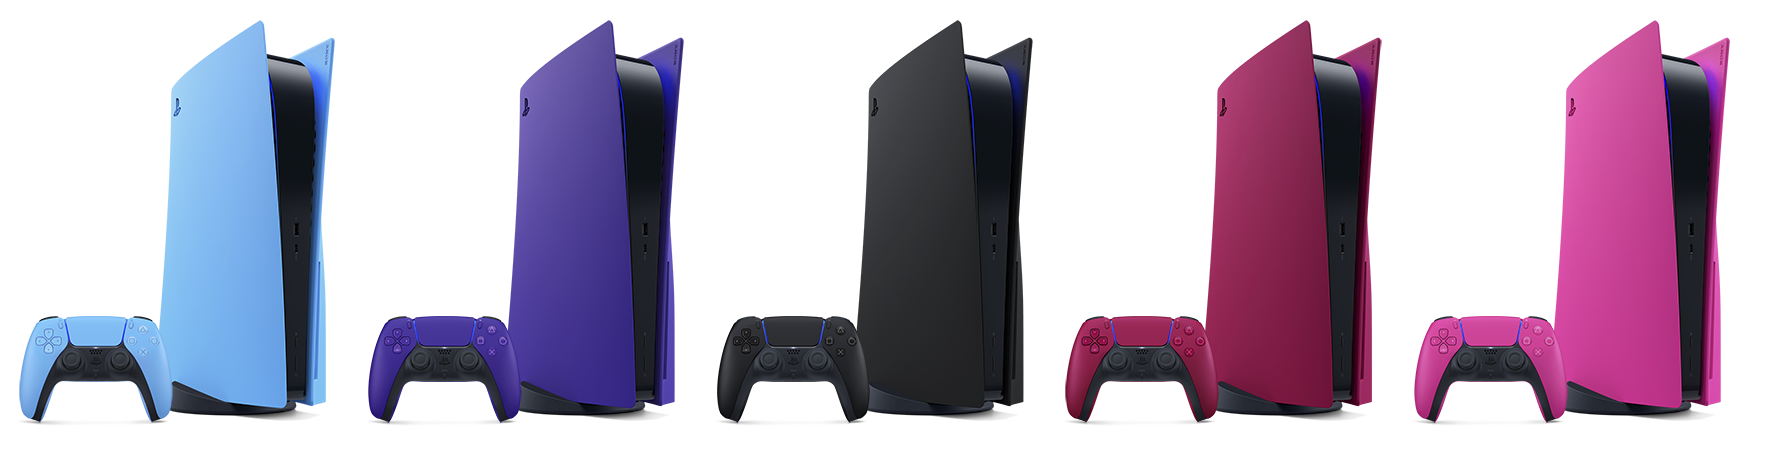 خمسة ألوان مختلفة لأغطية PS5